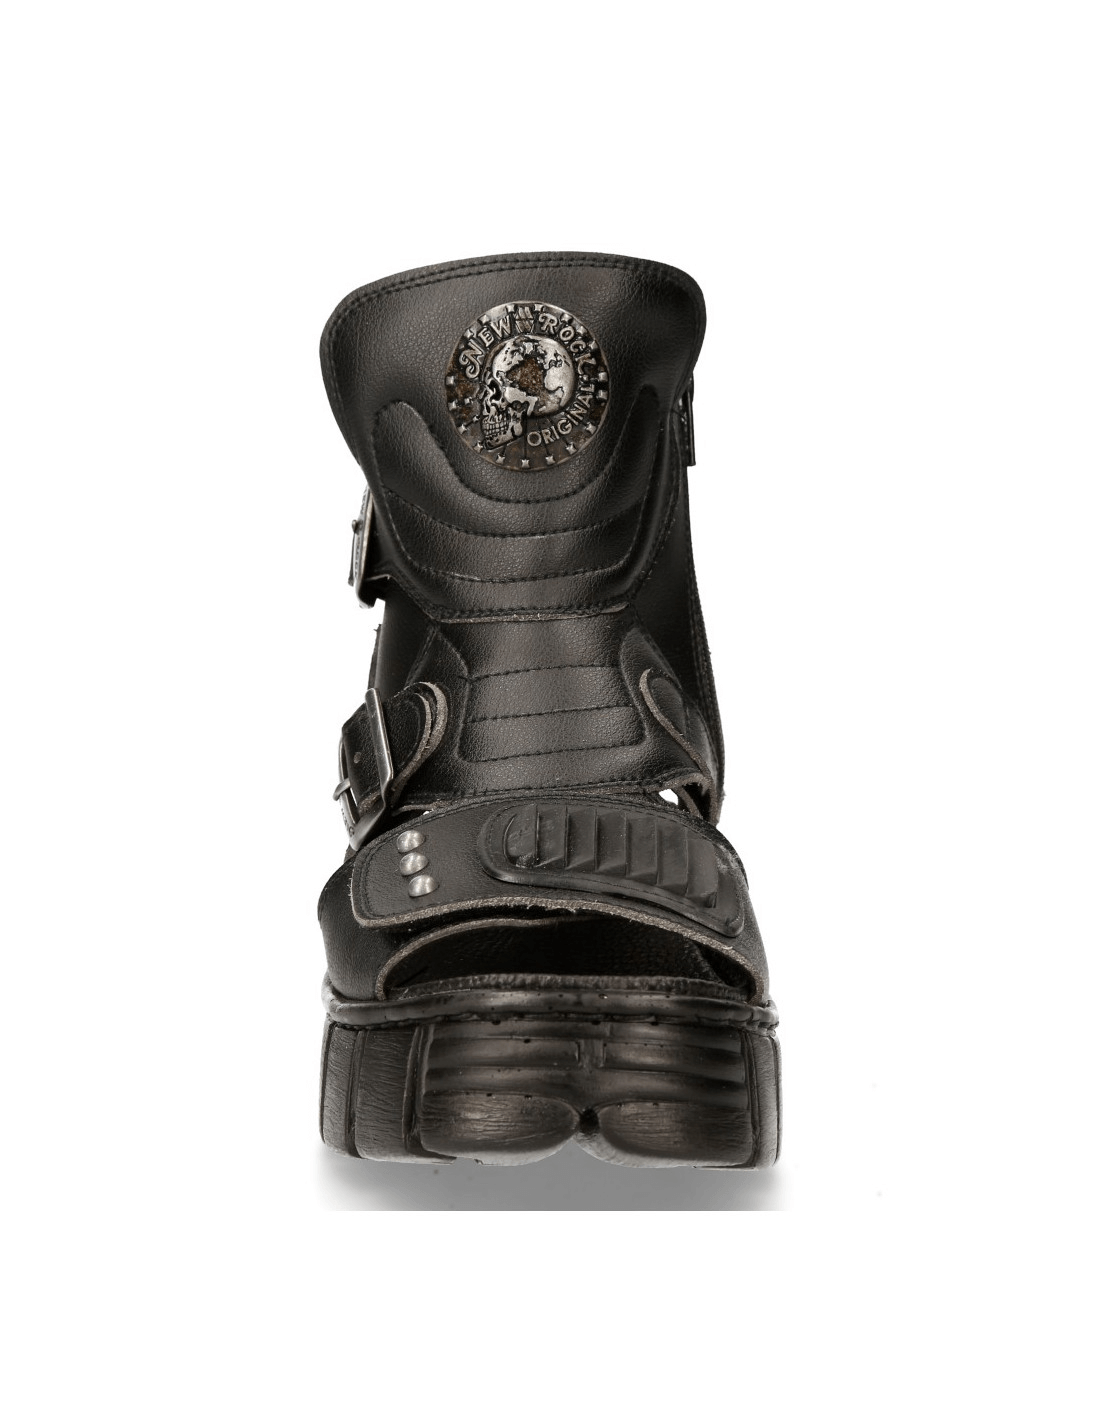 NEW ROCK Bio Black Tower Sandals - Unisex Gothic Footwear